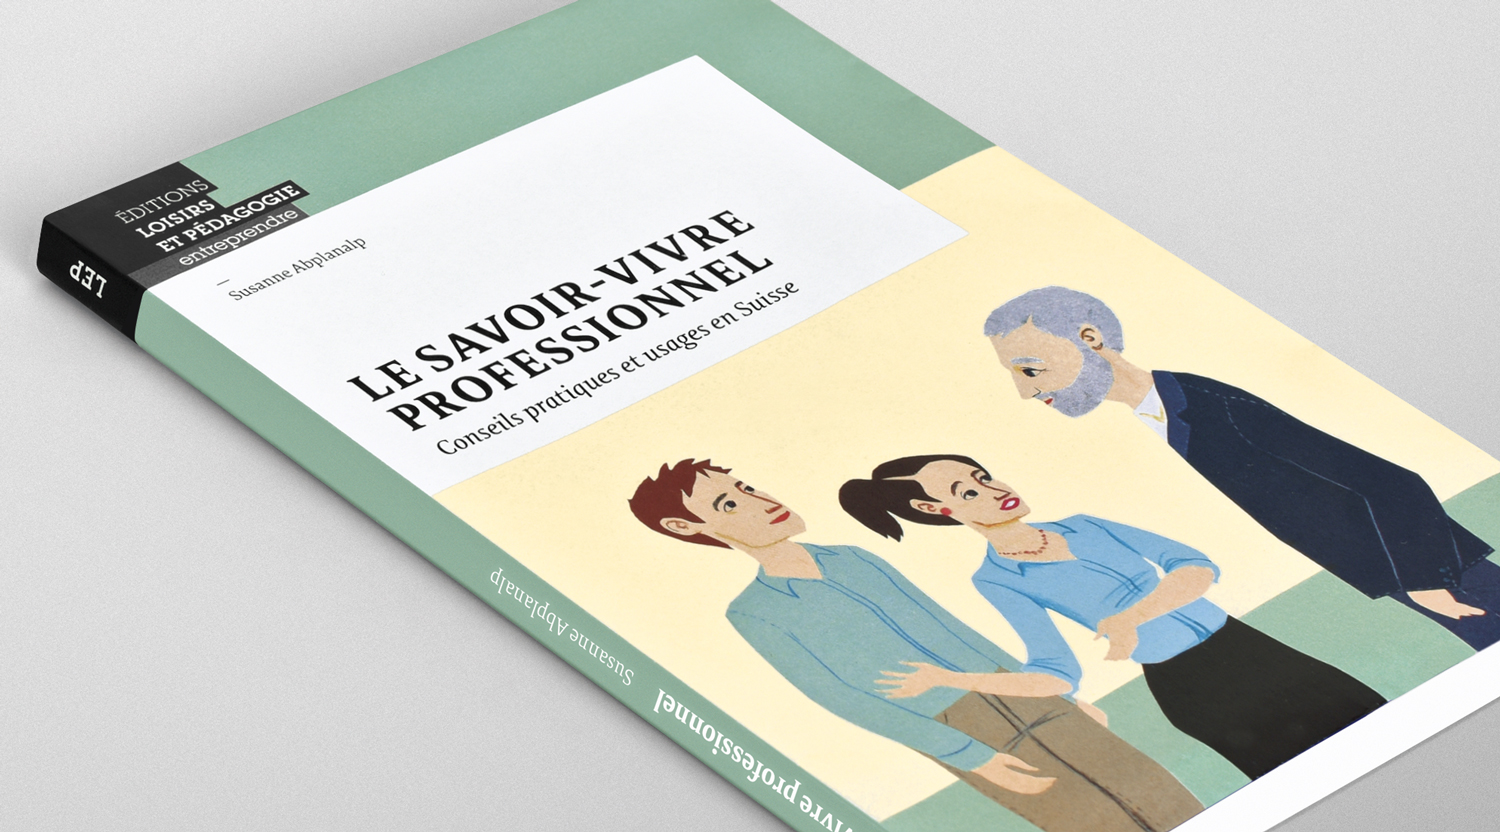 Première de couverture du livre Le savoir-vivre professionnel: conseils pratiques et usages en Suisse